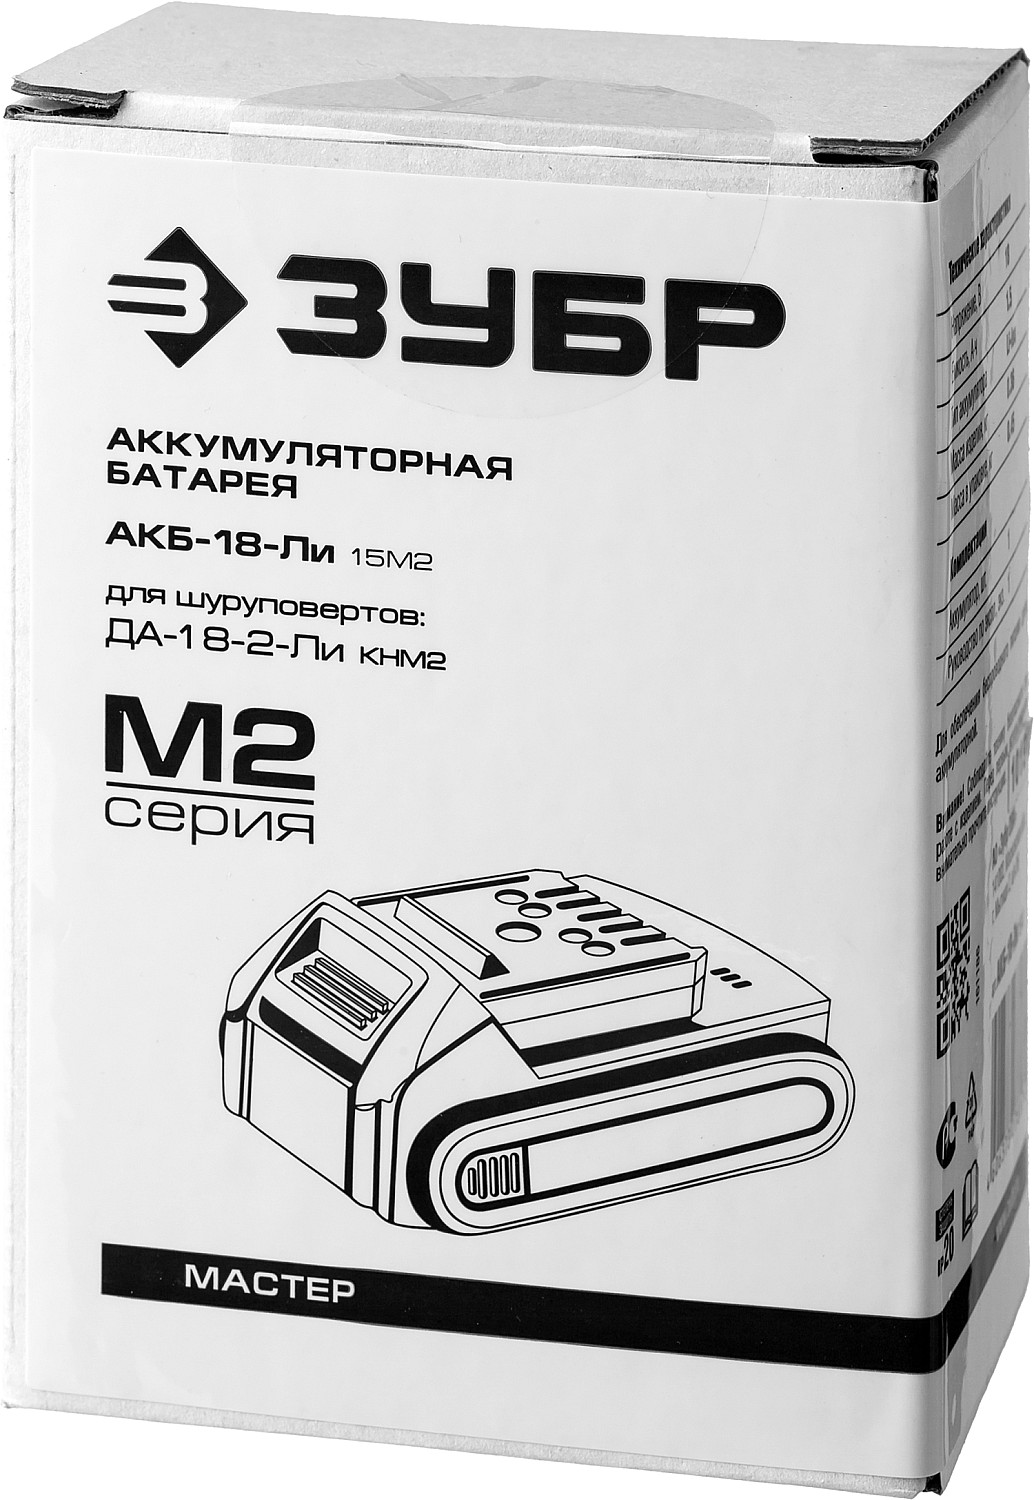 ЗУБР М2, 18 В, 1.5 А·ч, аккумуляторная батарея (АКБ-18-Ли 15М2)